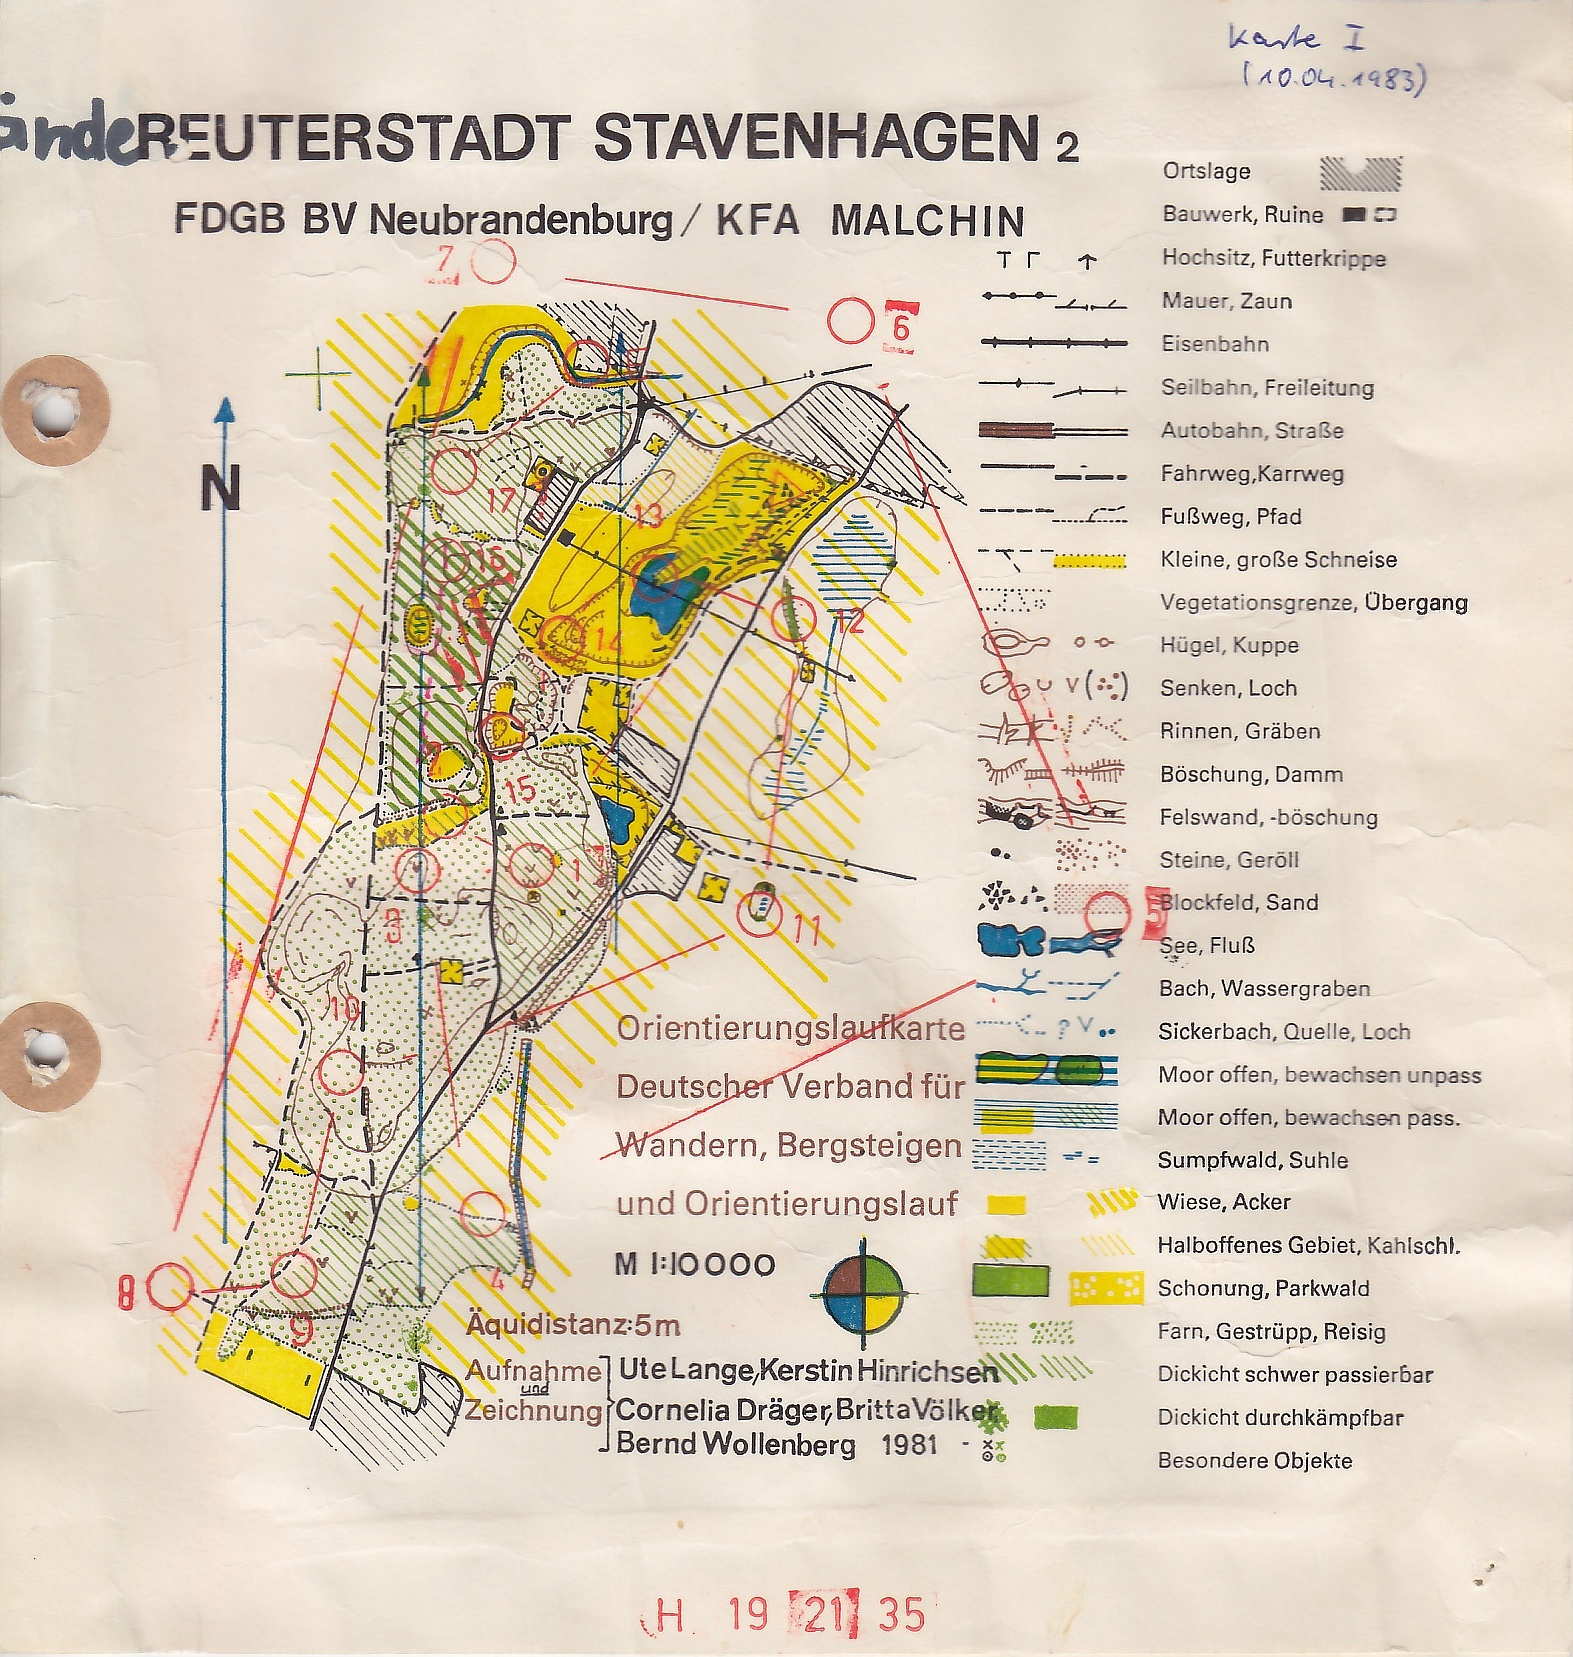 Stavenhagen (10/04/1983)